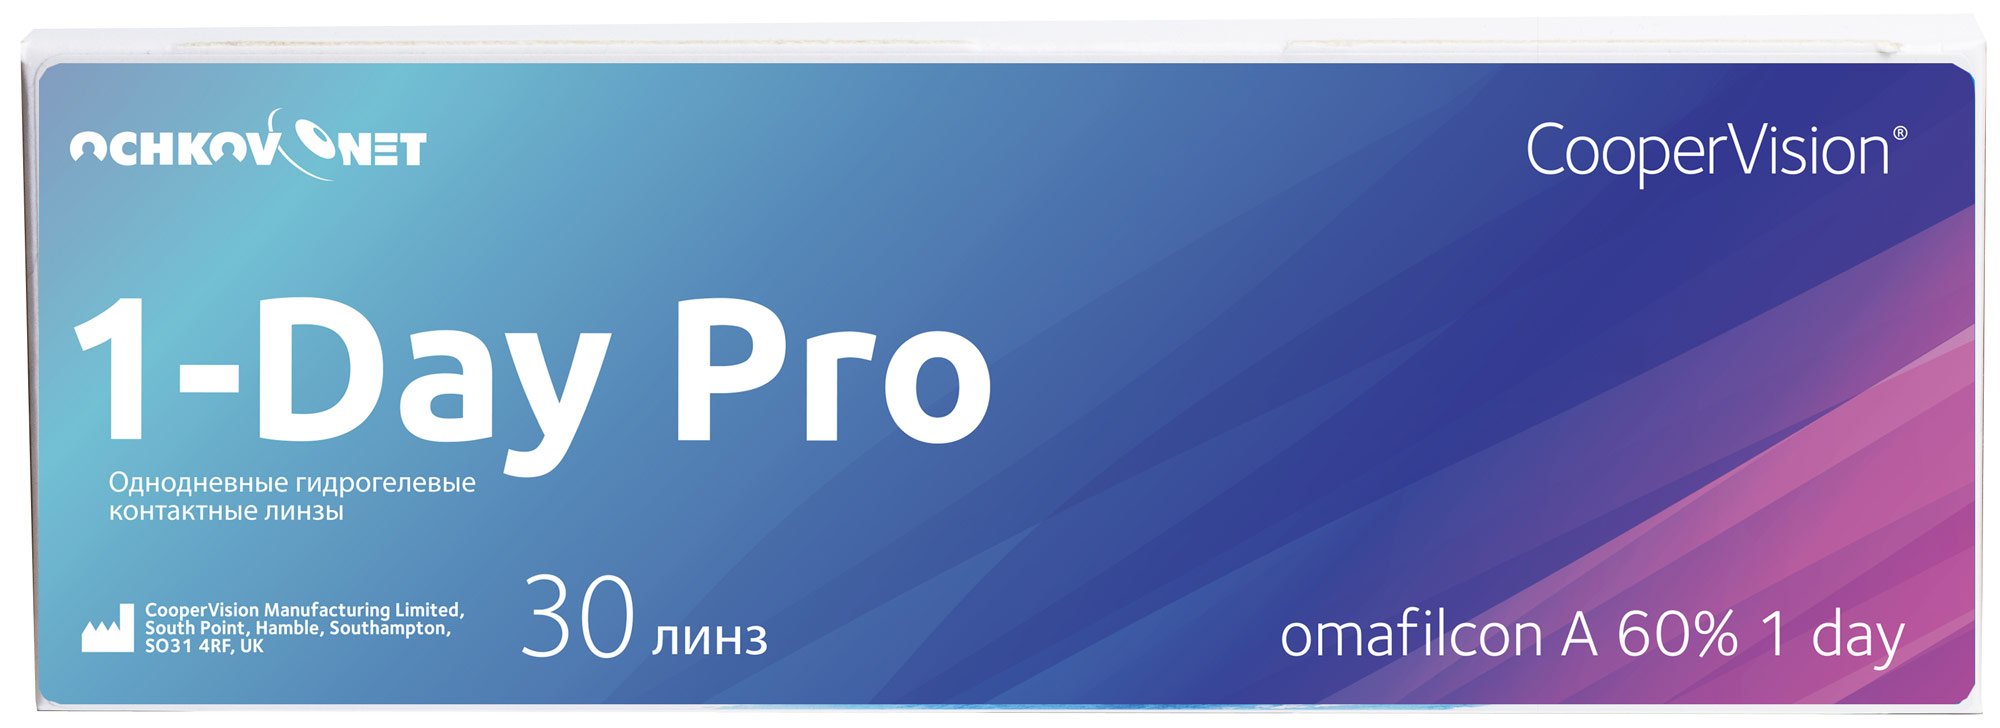 Купить Контактные линзы Ochkov.Net 1-Day Pro 30 линз R 8, 7 -4, 00